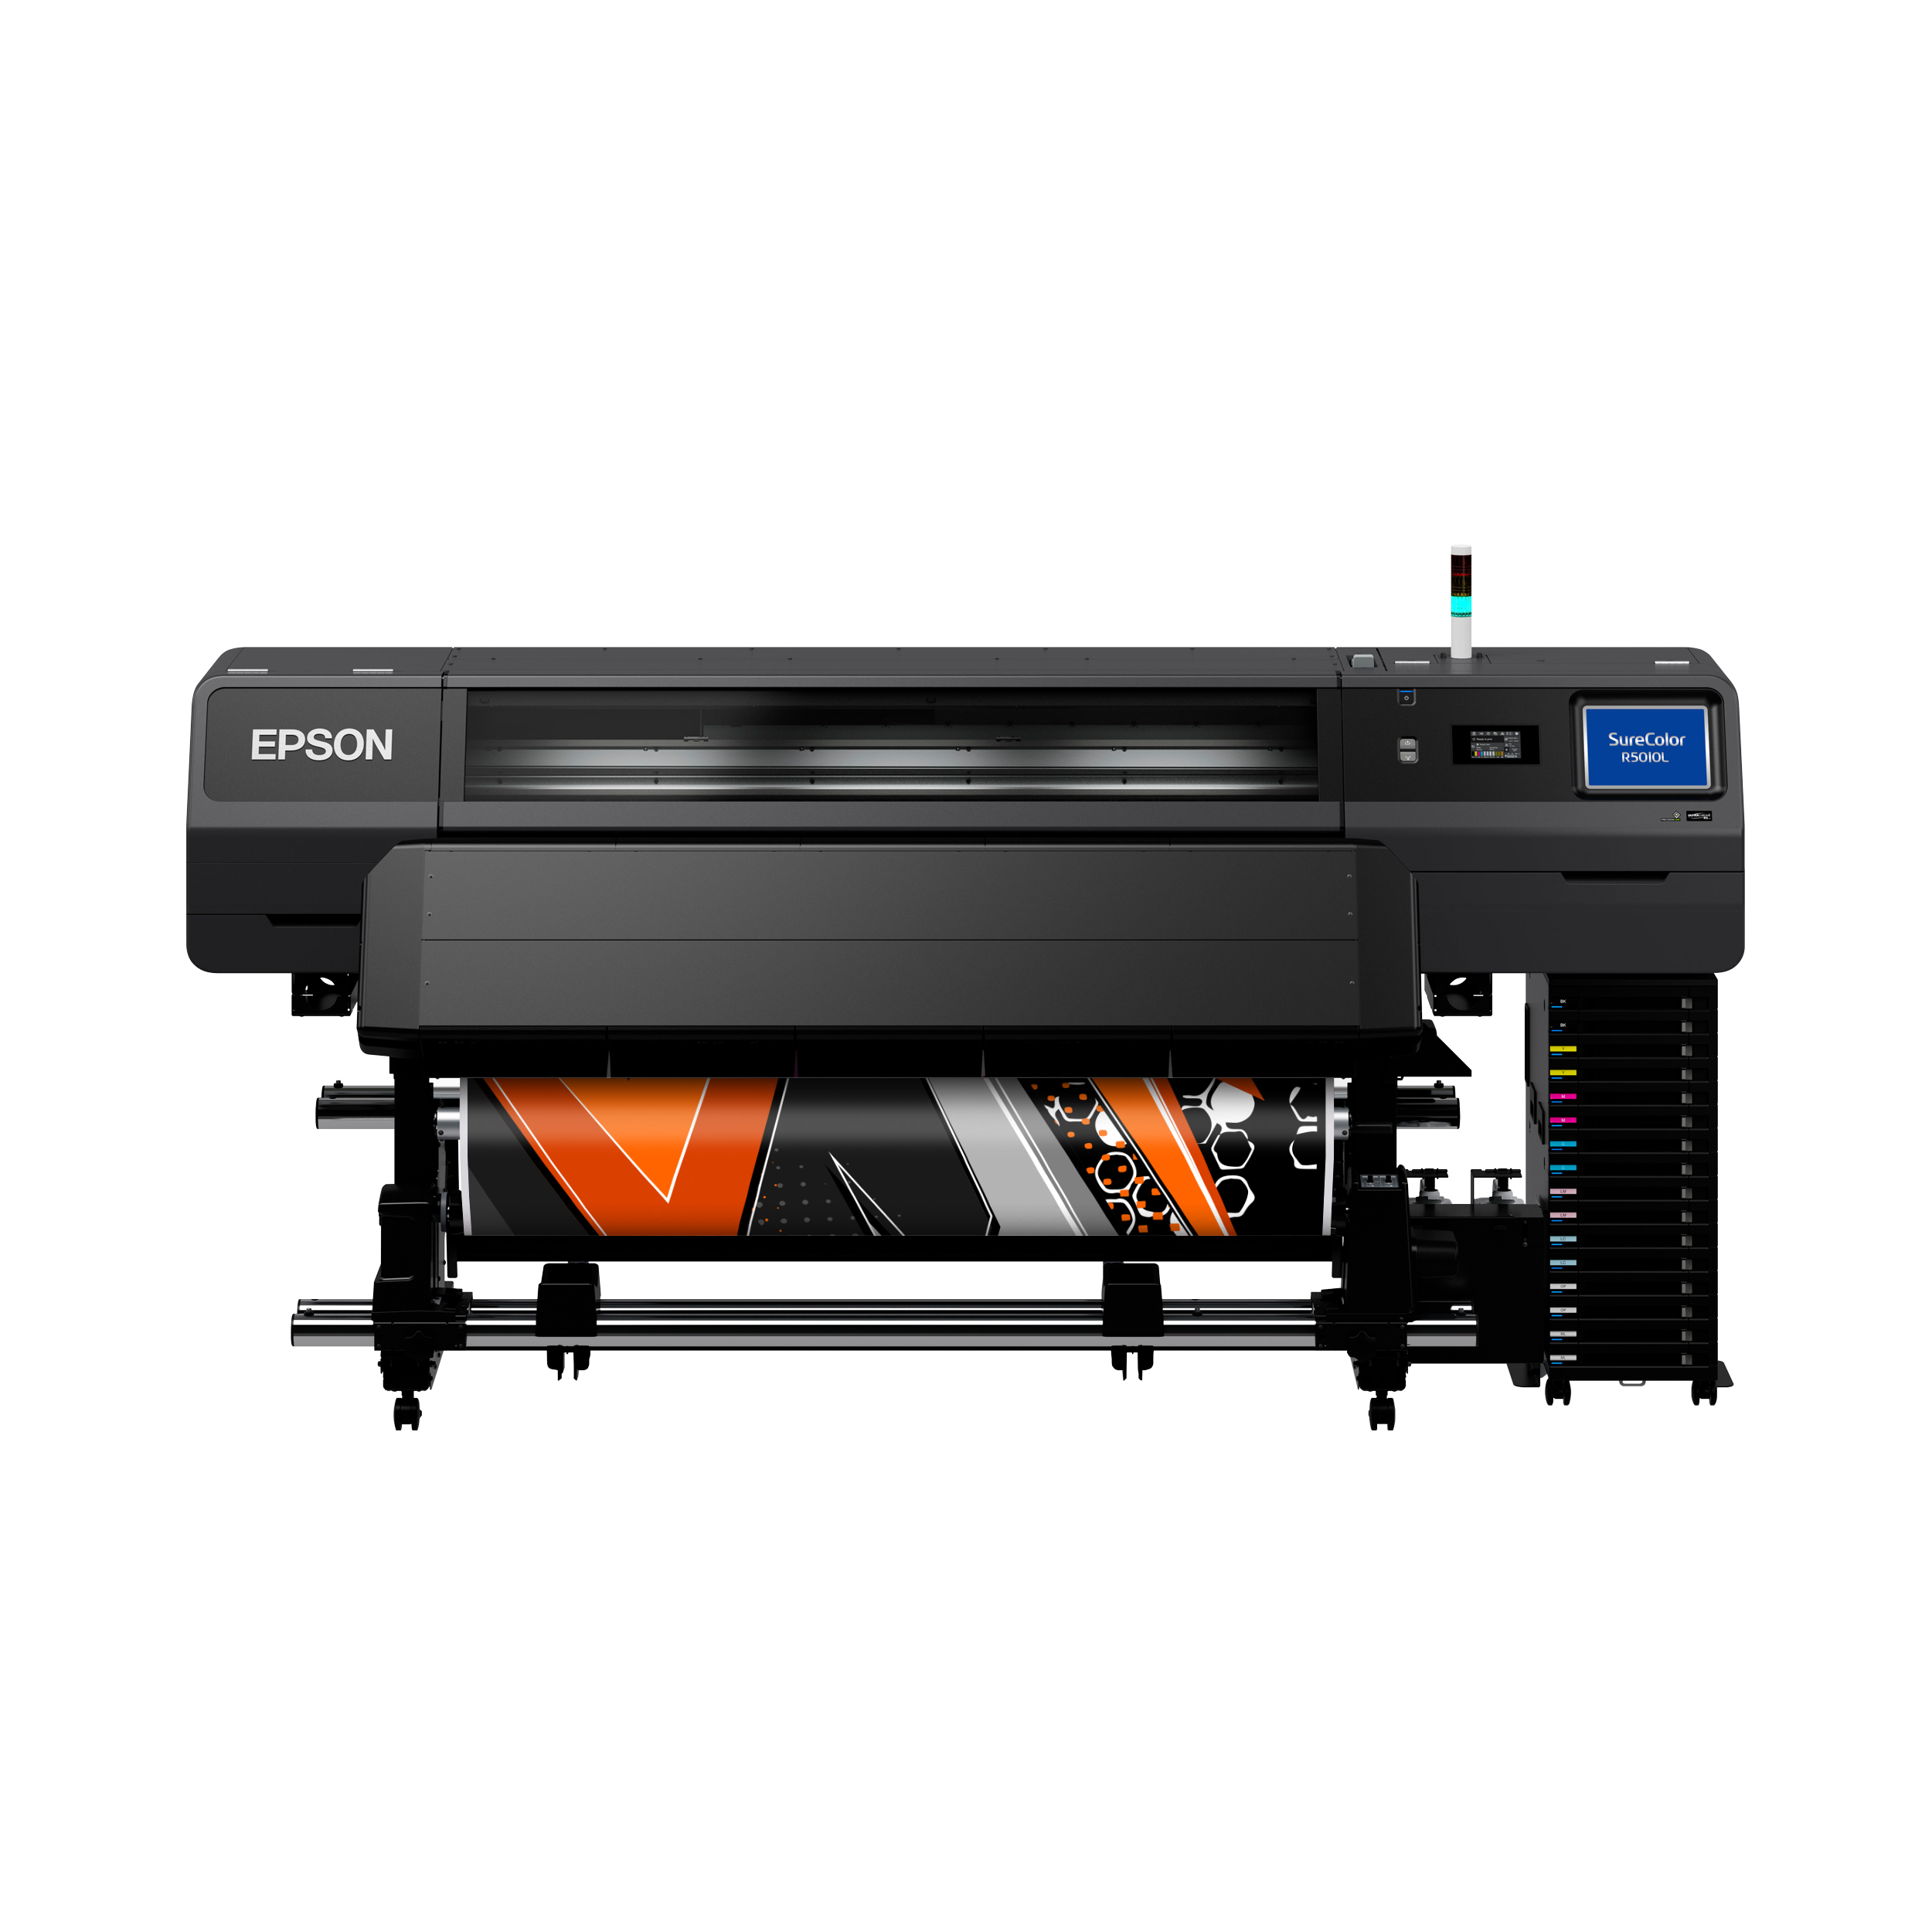 Surecolor Sc R5010l Lfp Printers Products Epson Europe